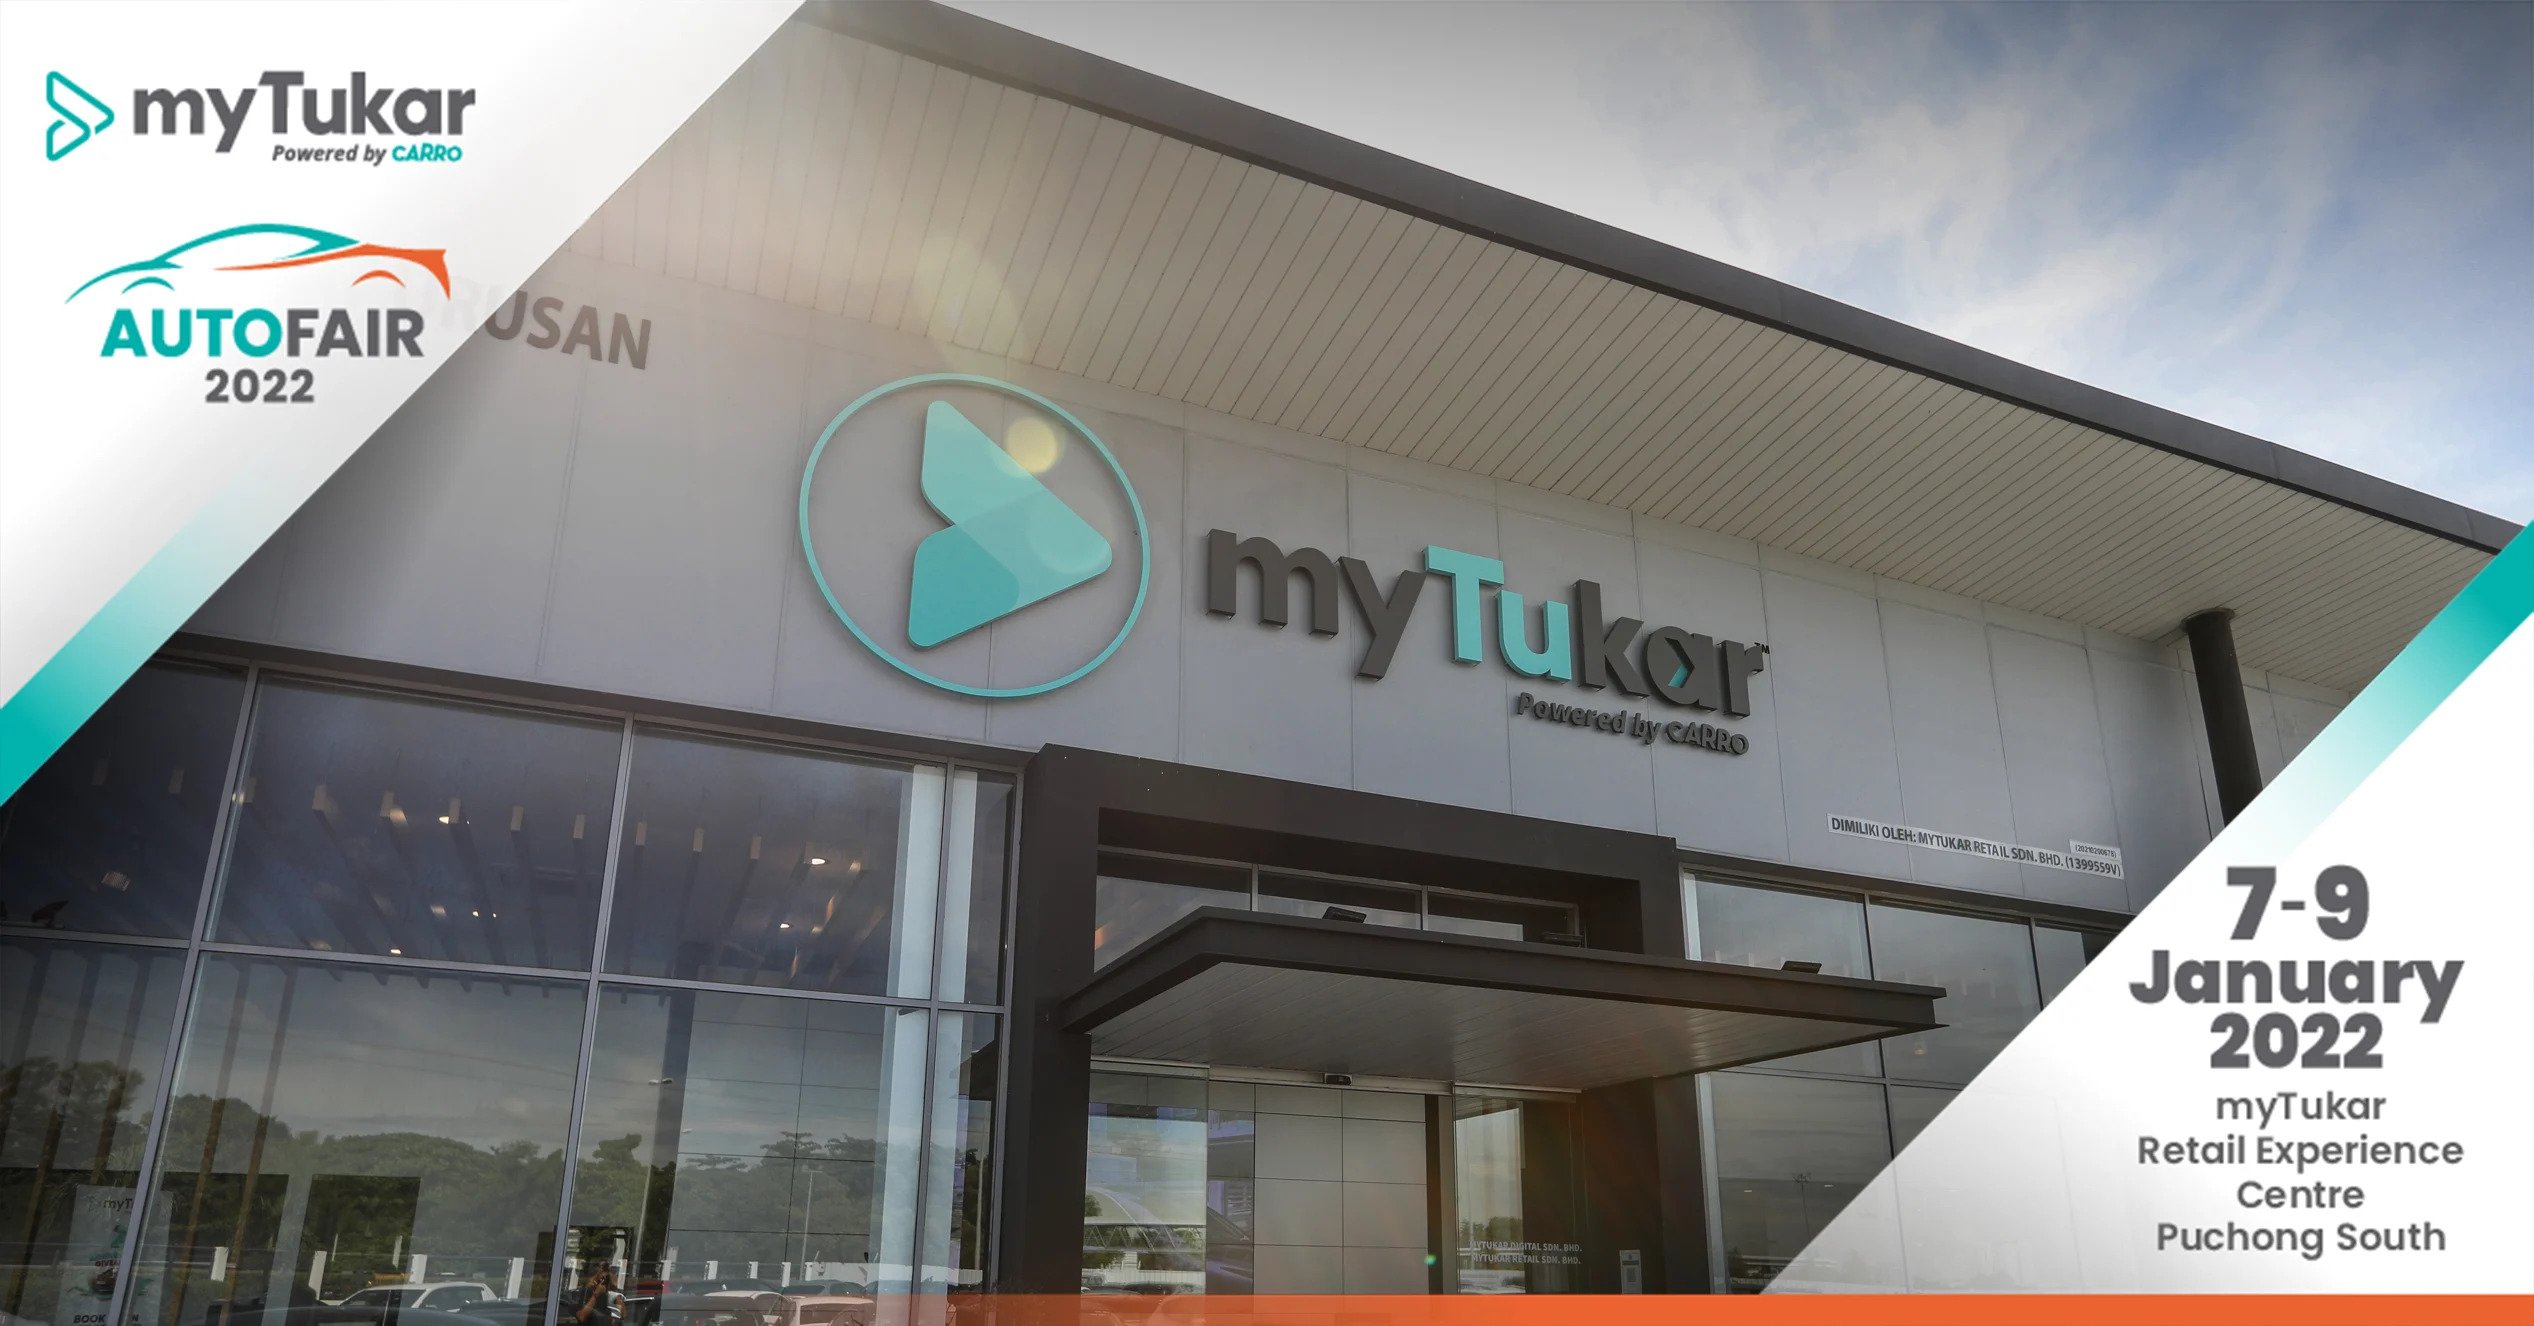 myTukar AutoFair 2022 于本周末1月7日至9日盛大开展！购买心仪二手车享有五天免理由退款保证，还有机会赢奖！